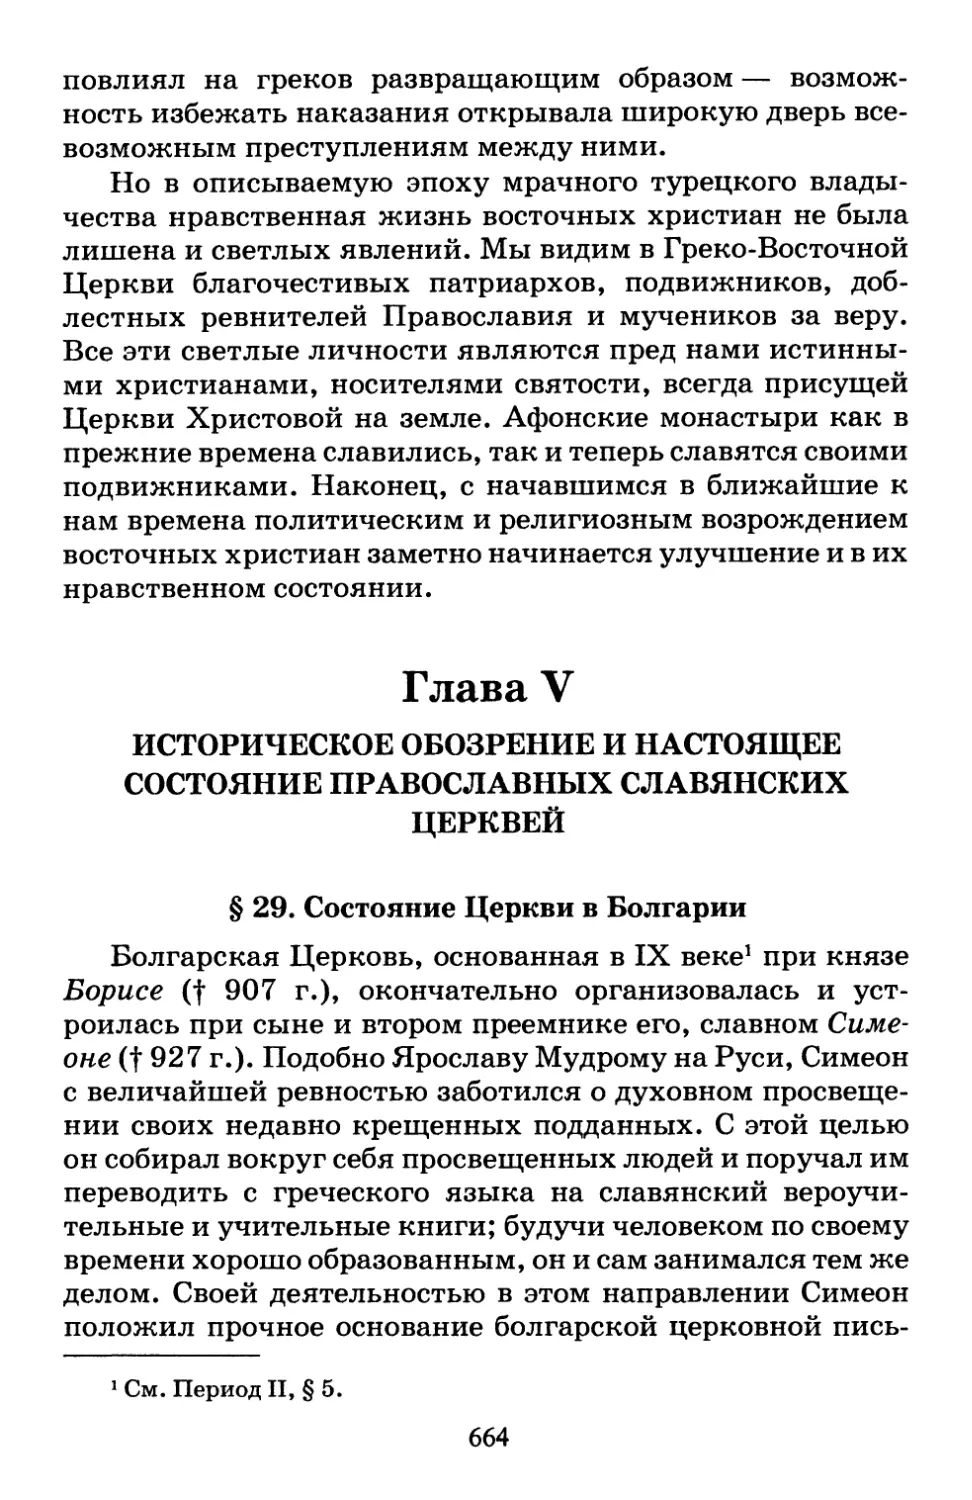 Глава V. Историческое обозрение и настоящее состояние Православных Славянских Церквей